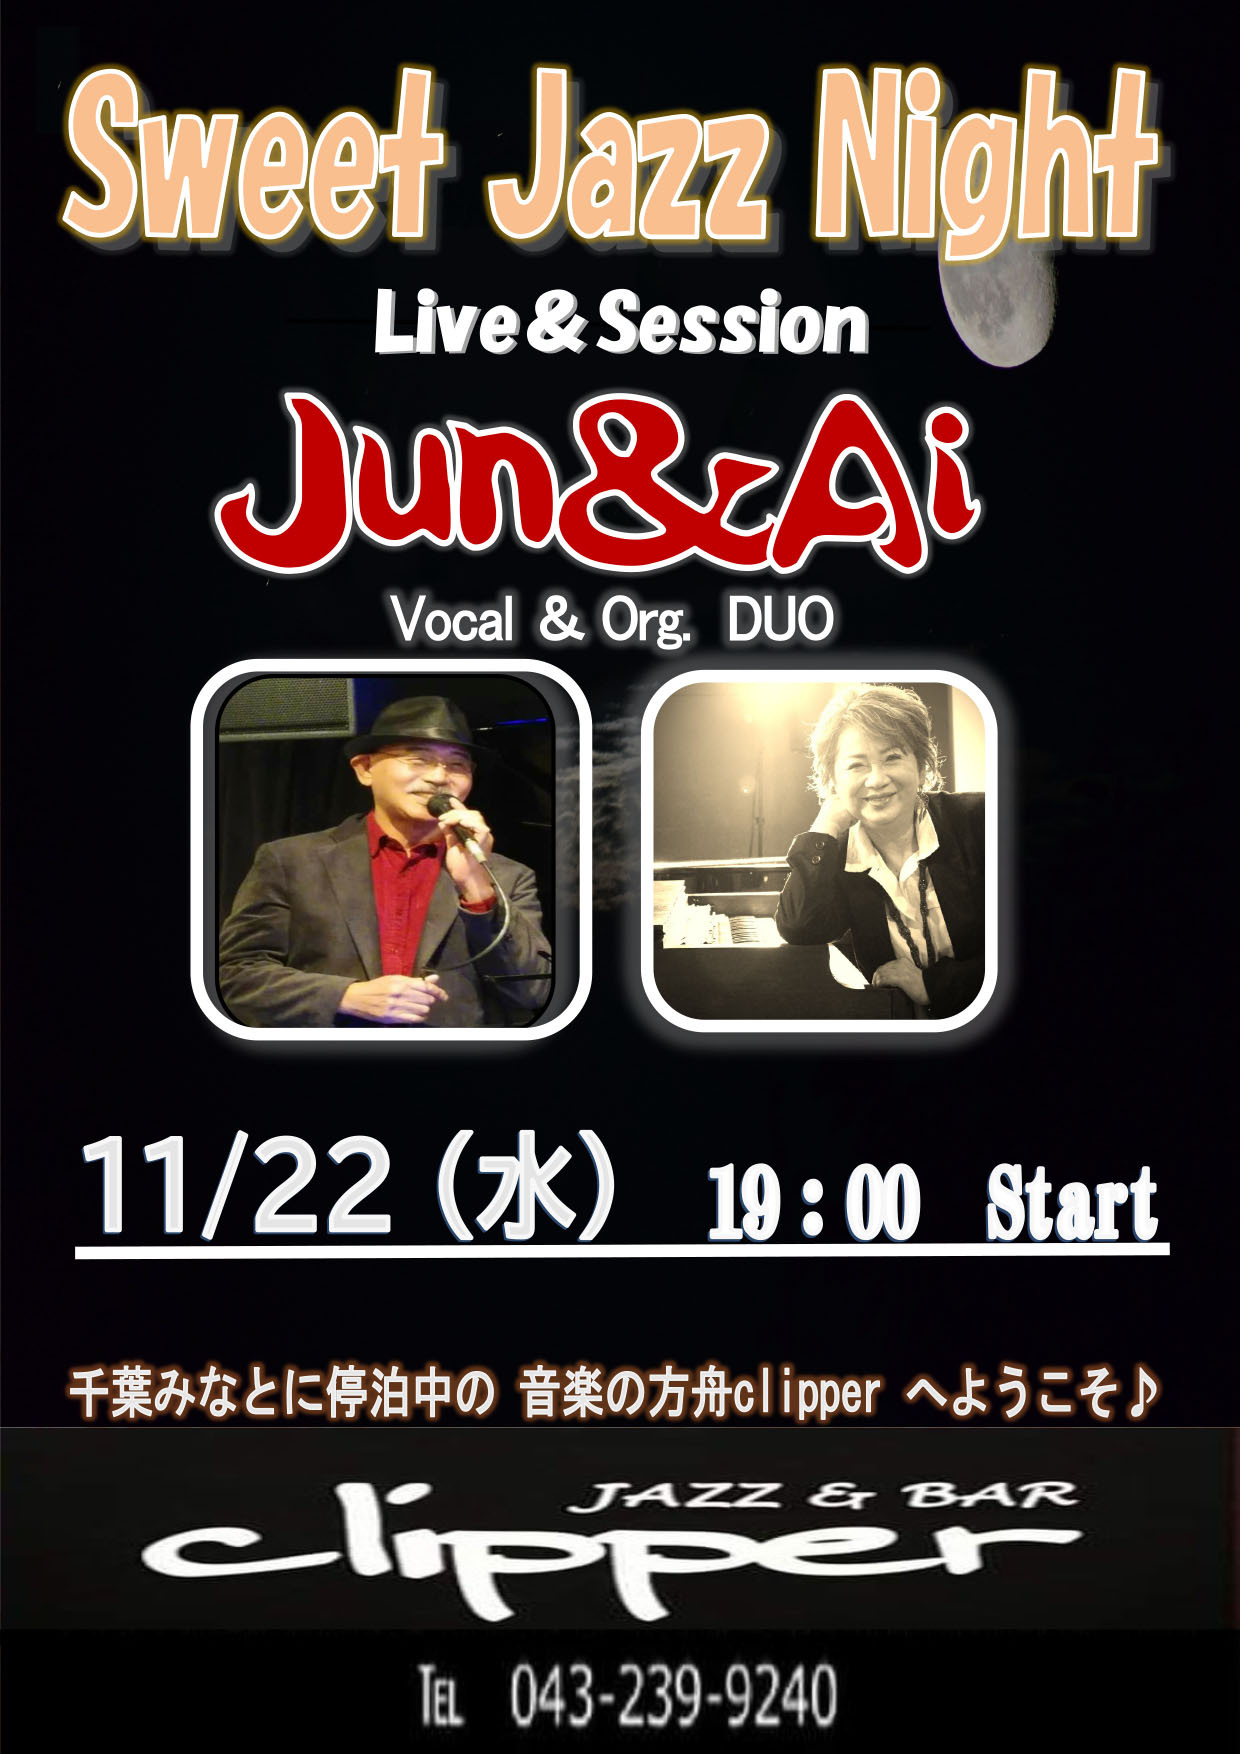 Jun & Ai Live & Session & Vocal Workshop